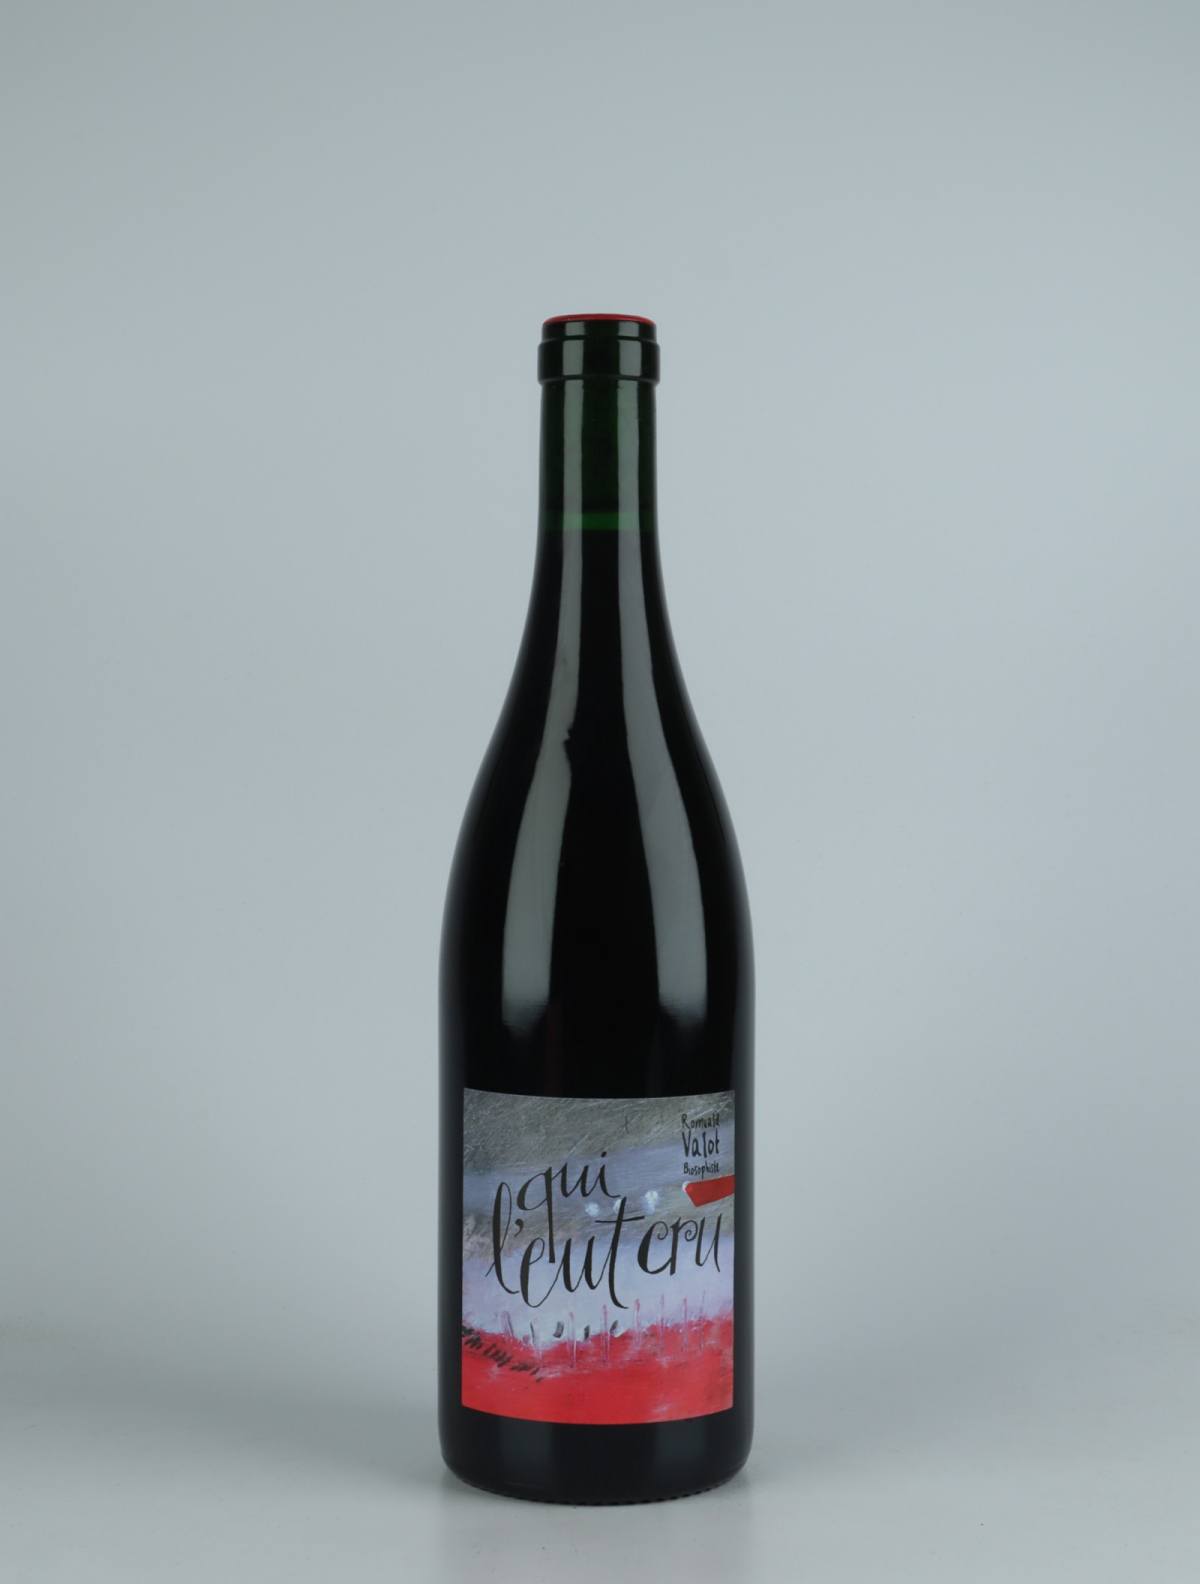 En flaske 2021 Qui l'eut Cru Rødvin fra Romuald Valot, Beaujolais i Frankrig